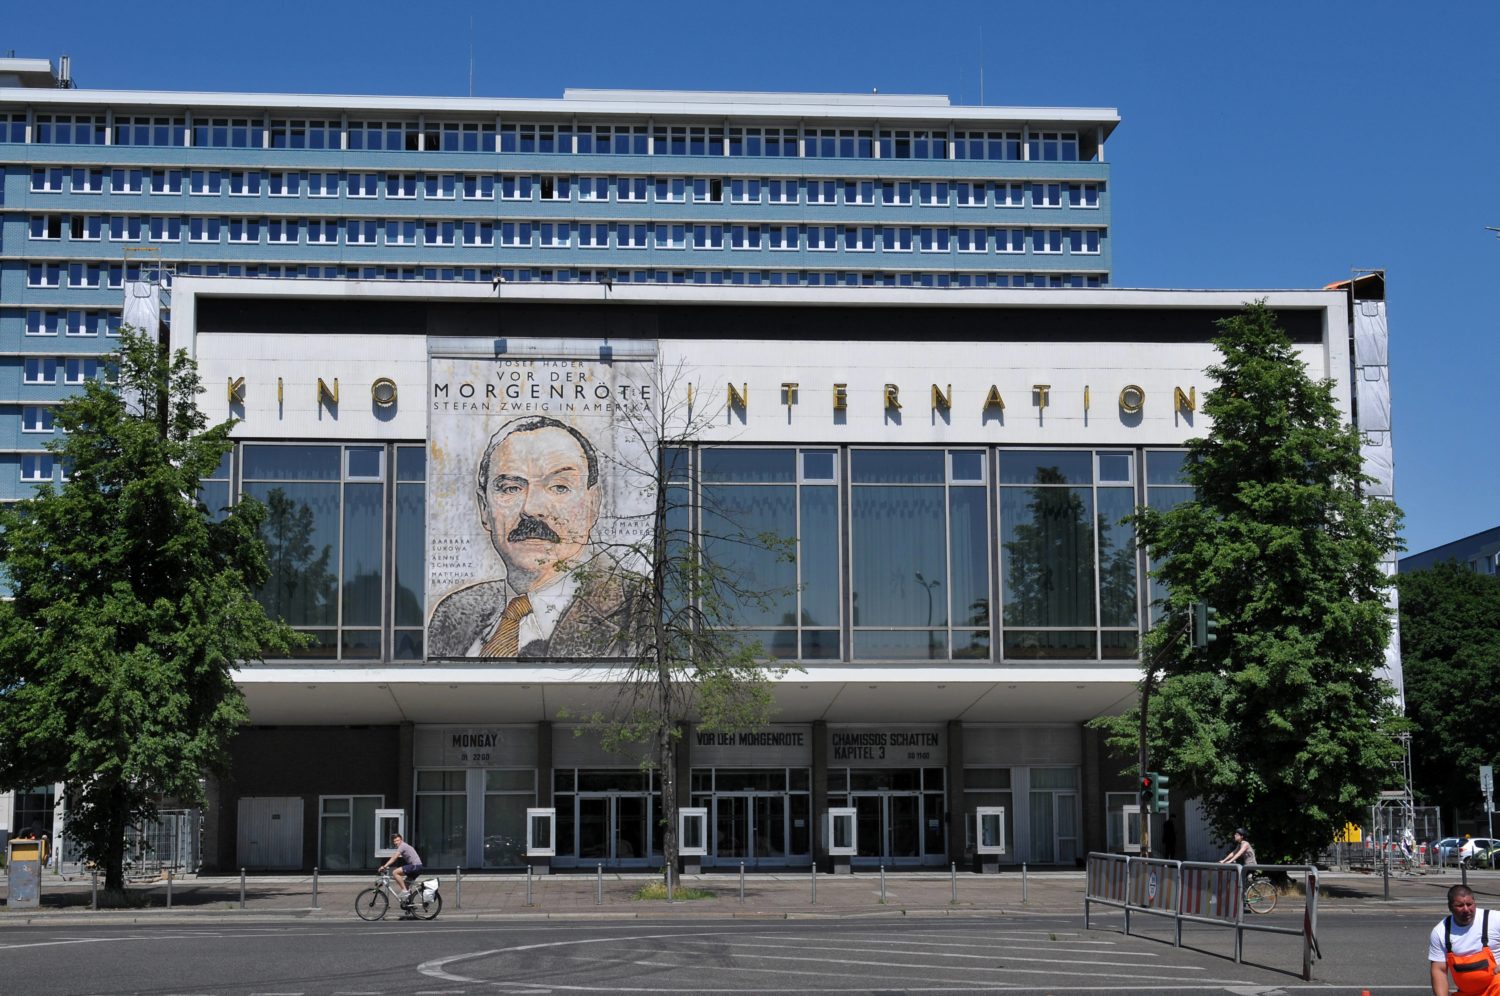 So leicht und elegant konnte DDR-Architektur sein: Das Berliner Kino International, gebaut nach Entwürfen von Josef Kaiser. Foto: Imago Images/Schöning